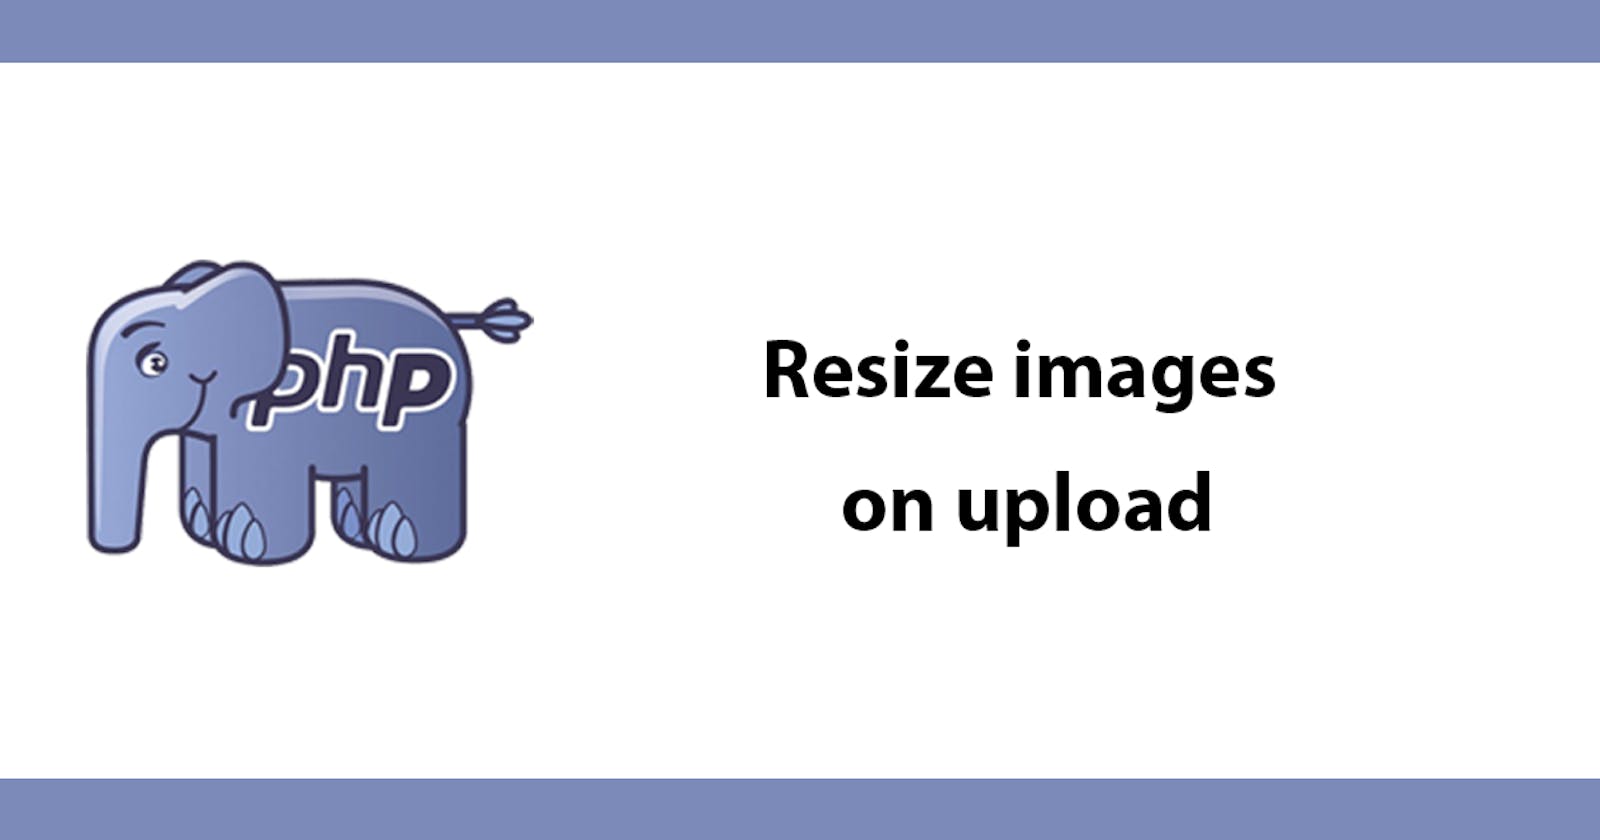 Resize images on upload